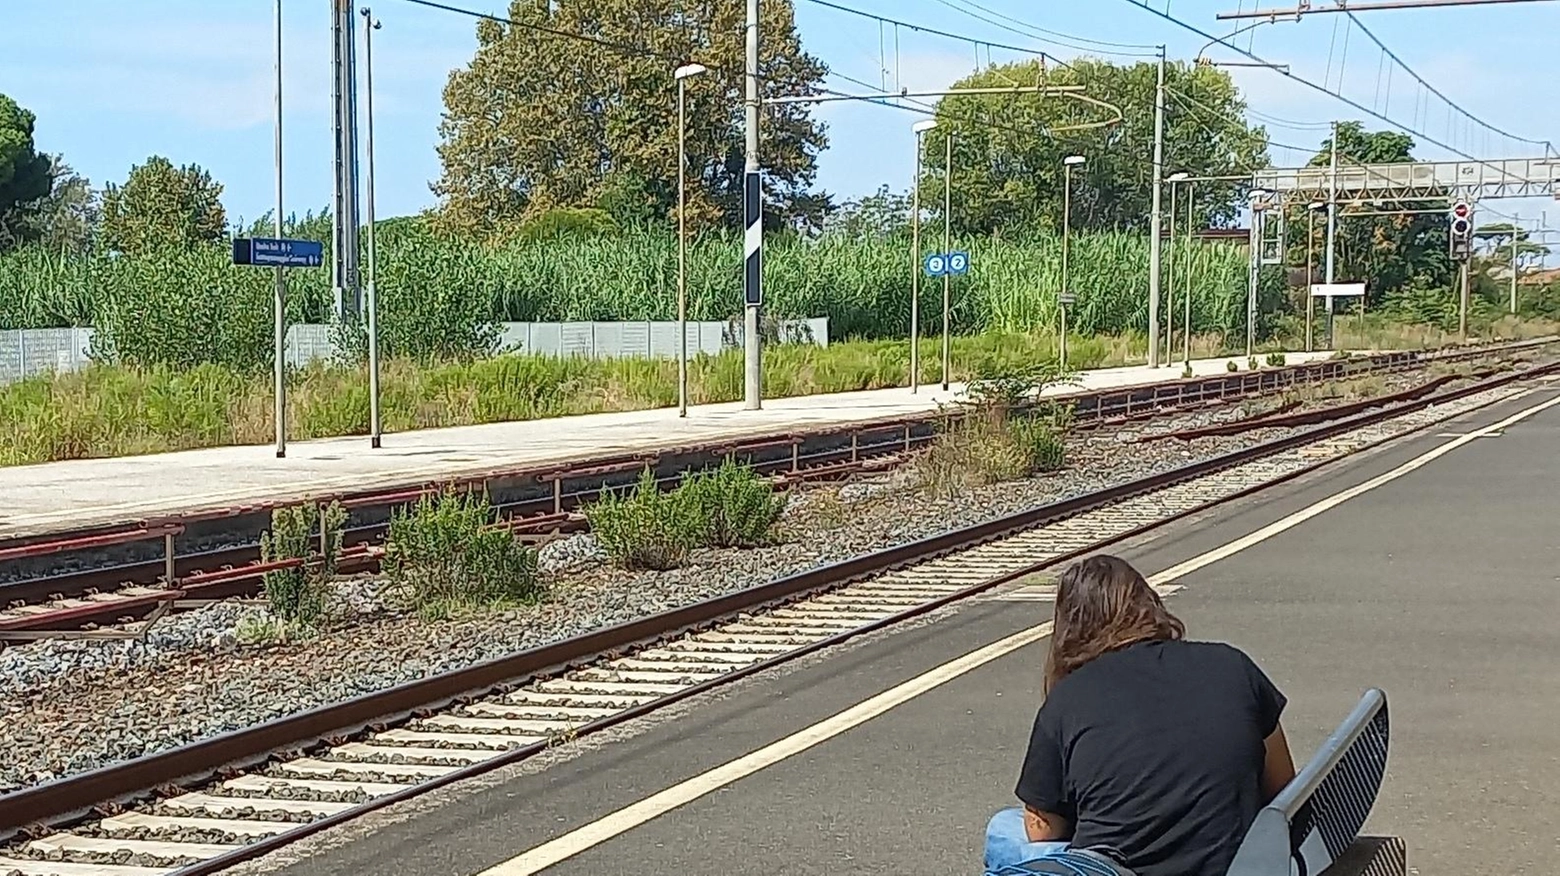 

Fotografa a Pietrasanta: treno in arrivo, uomo si scansa all'ultimo